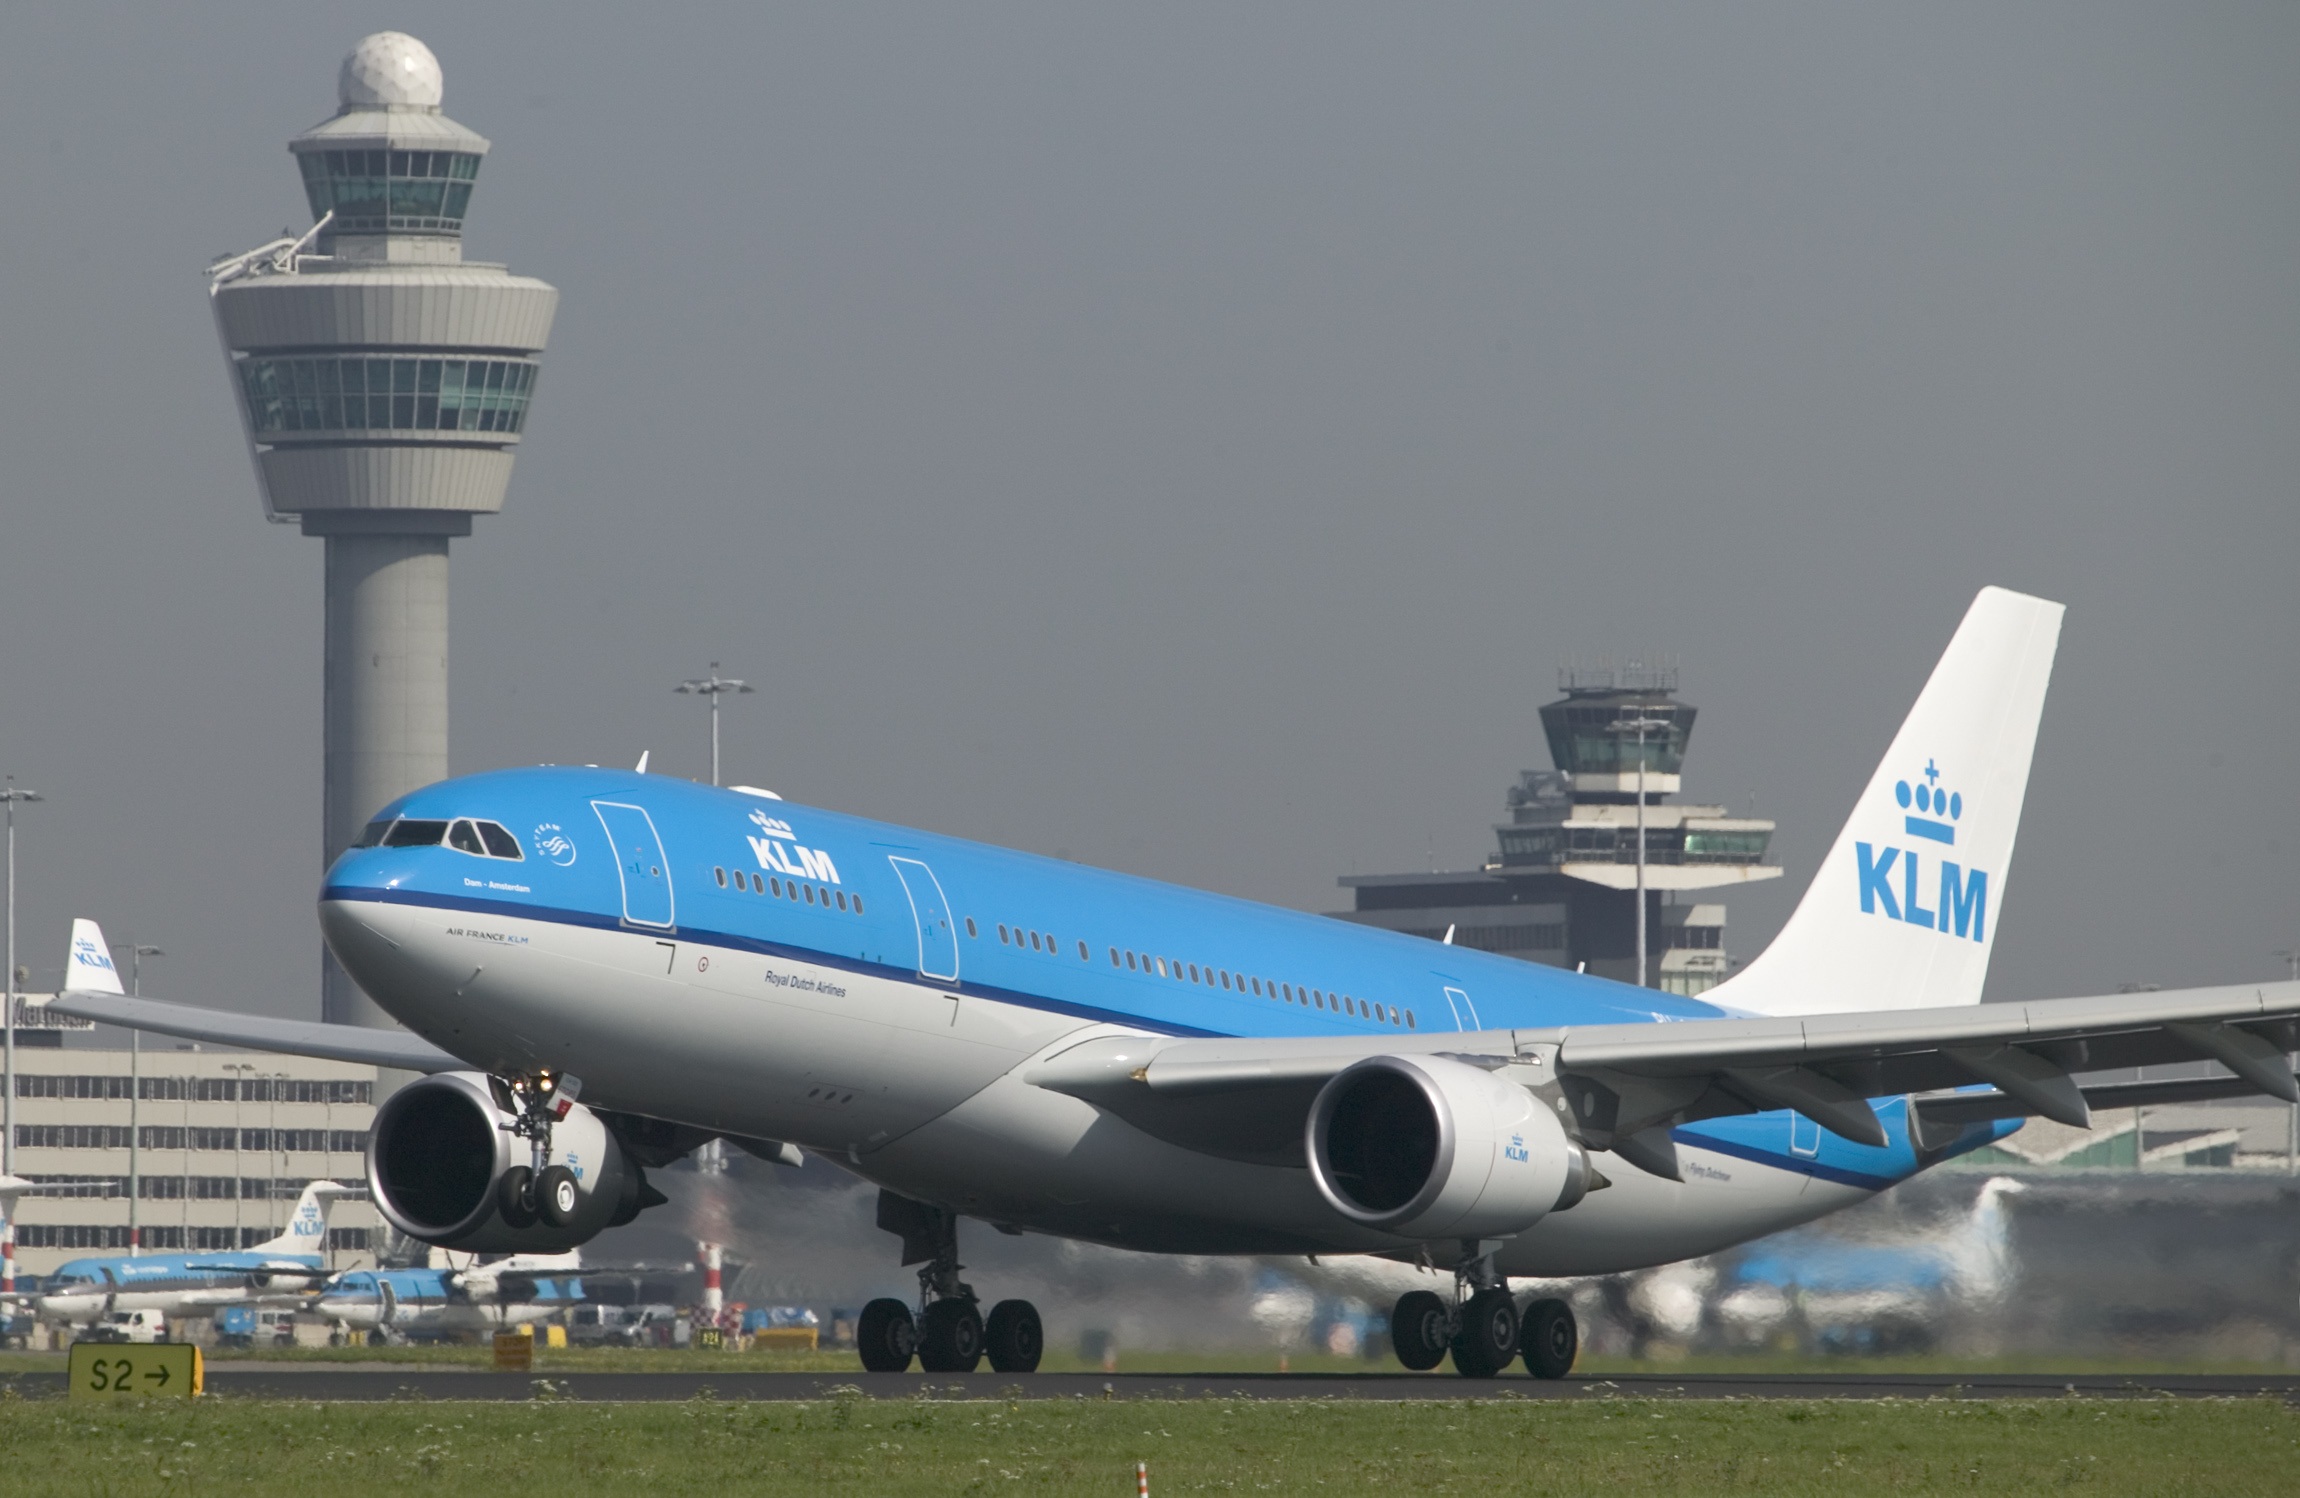 PRZEGLĄD PROMOCJI: oferta KLM do 10 czerwca (Azja)